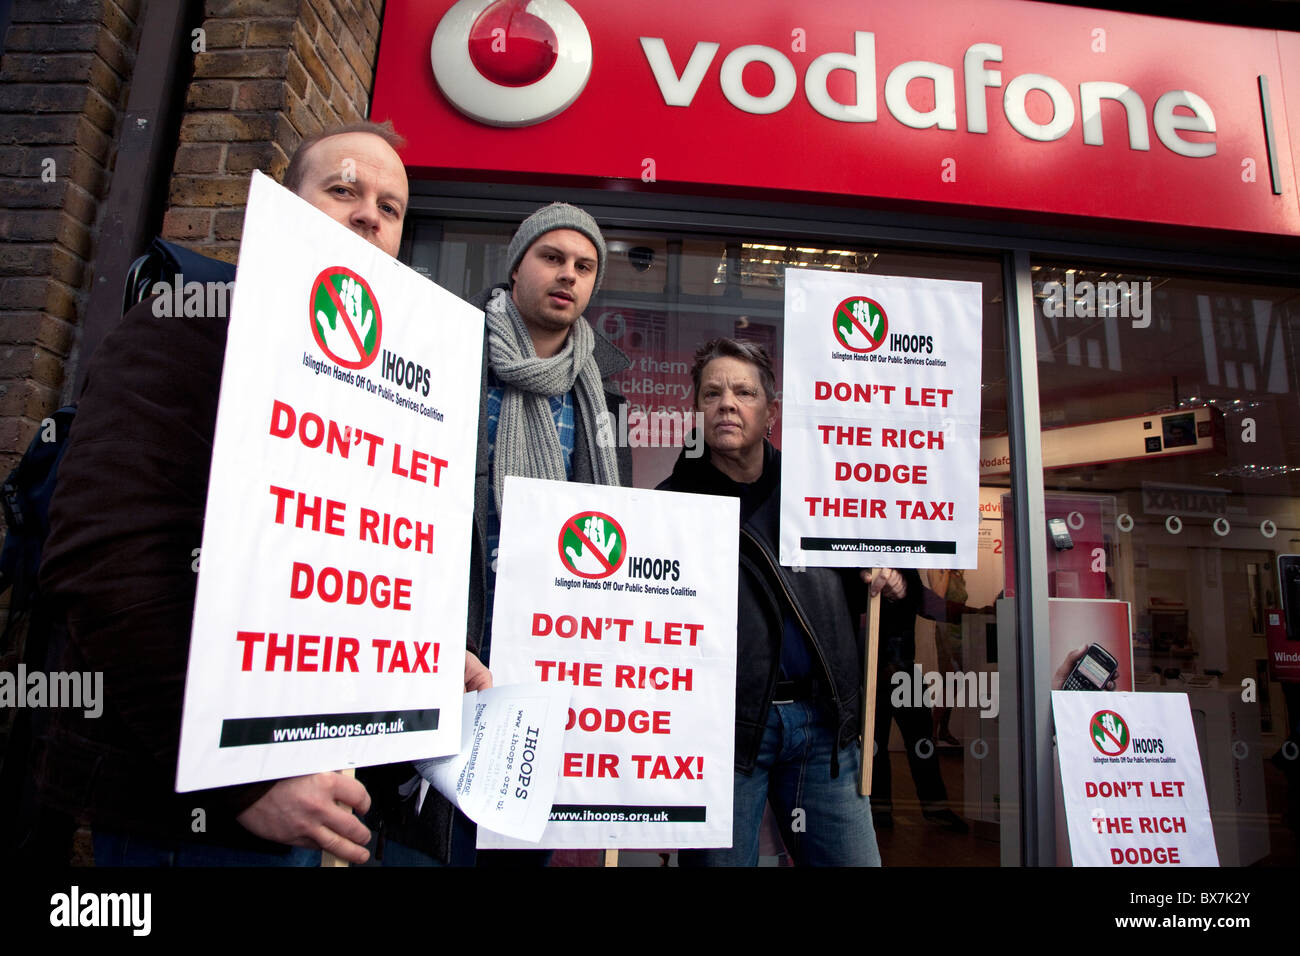 Manifestation devant Vodafone shop, Londres about $6 milliards de dollars en impôts impayés Banque D'Images